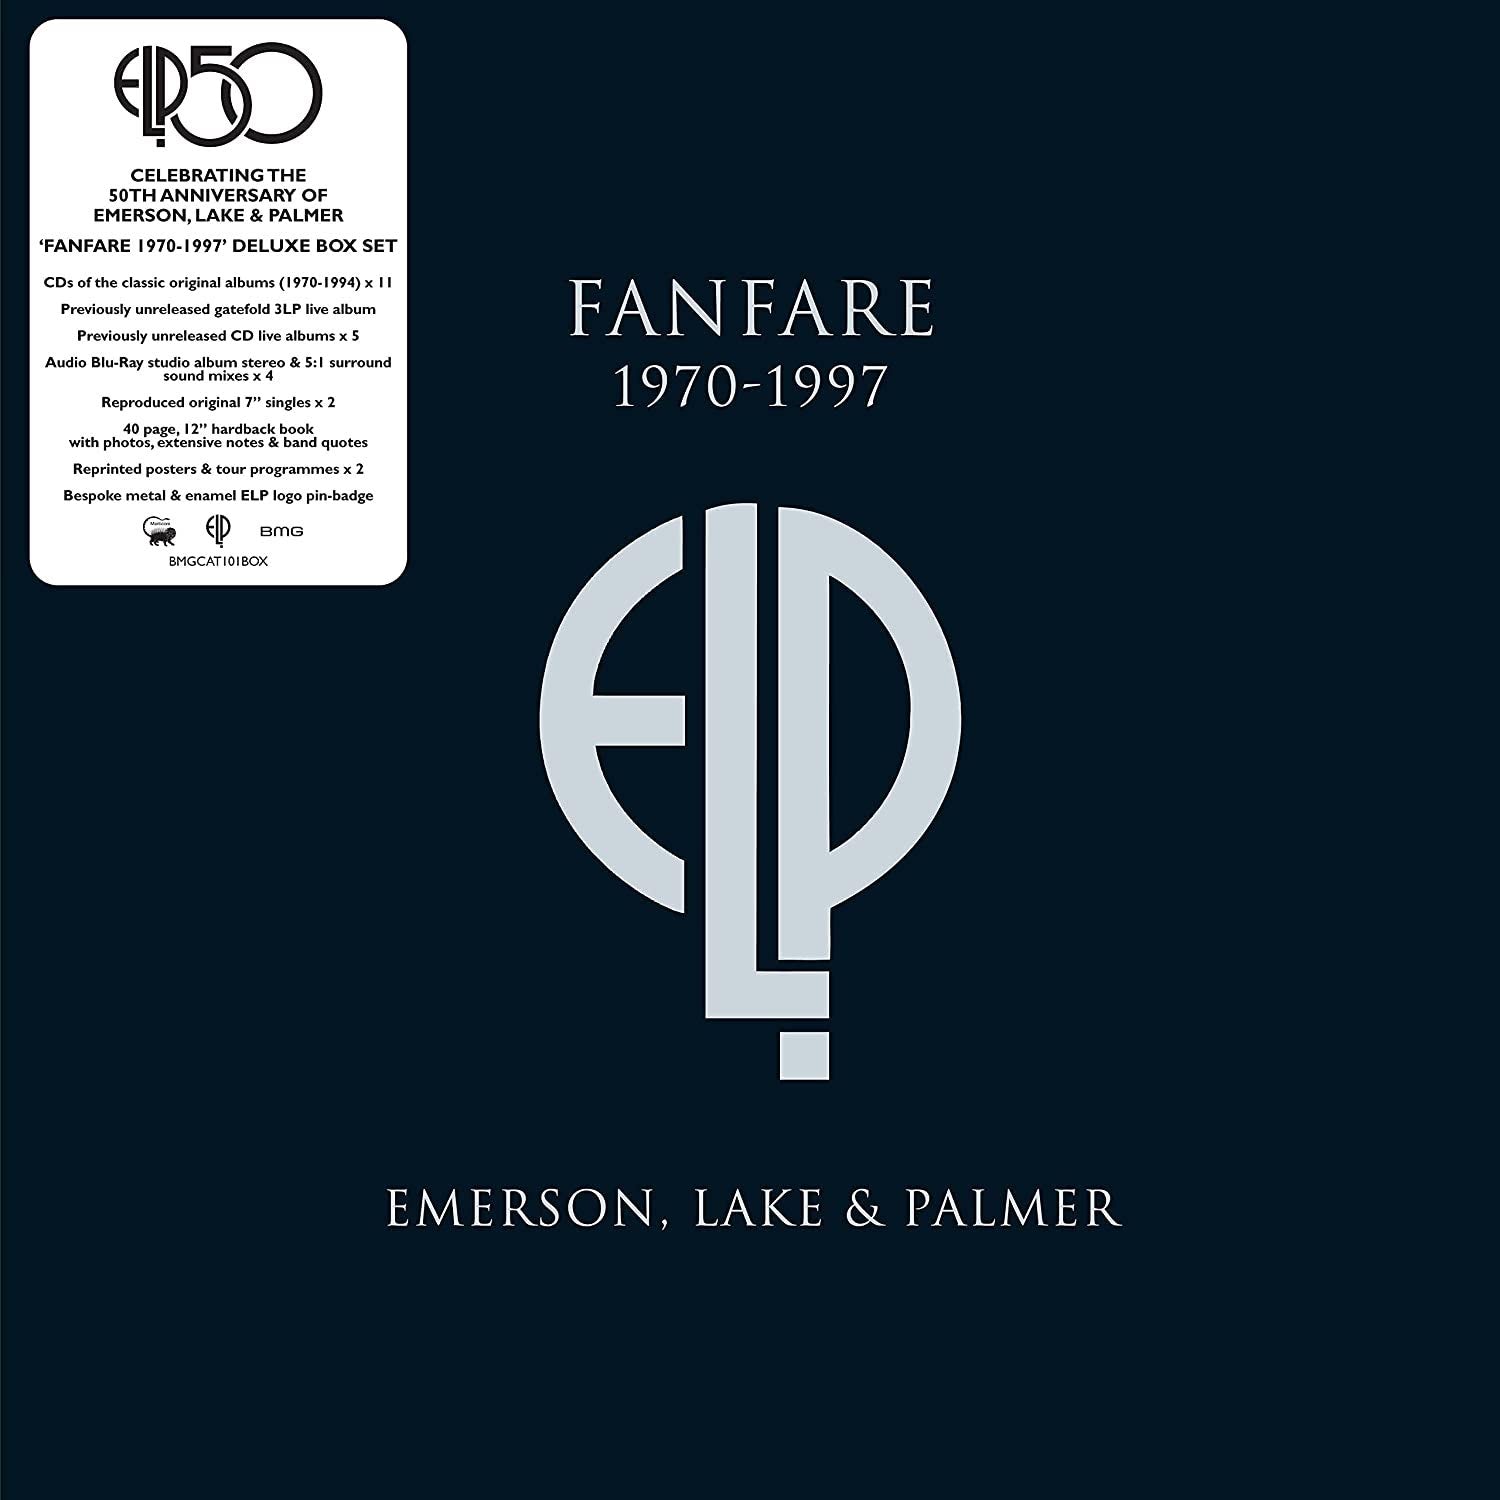 EMERSON, LAKE AND PALMER - Fanfare 1970-1997 - 16CD/3LP/Blu-Ray Audio/2x7" - Super Deluxe Boxset